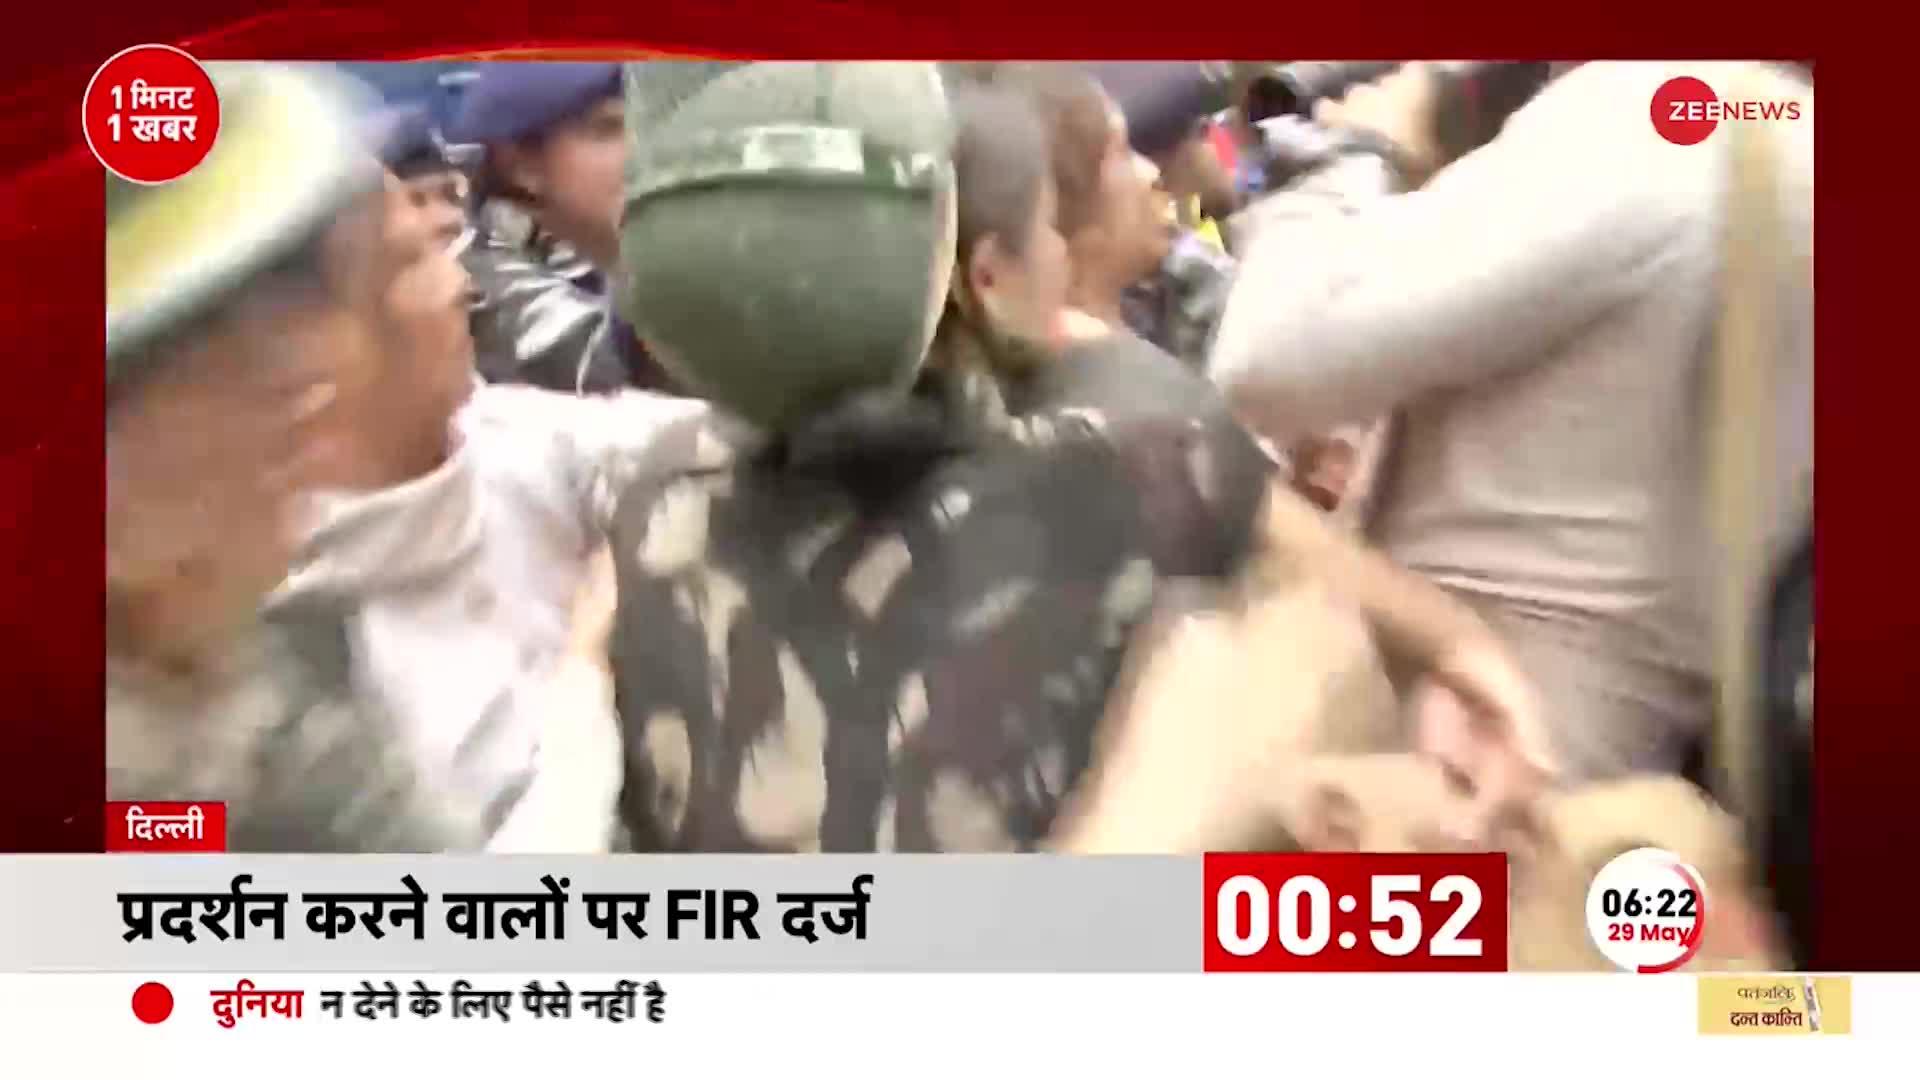 Wrestlers Protest: दिल्ली के Jantar-Mantar पर प्रदर्शन करने वालों के खिलाफ FIR पुलिस ने हटाए तंबू